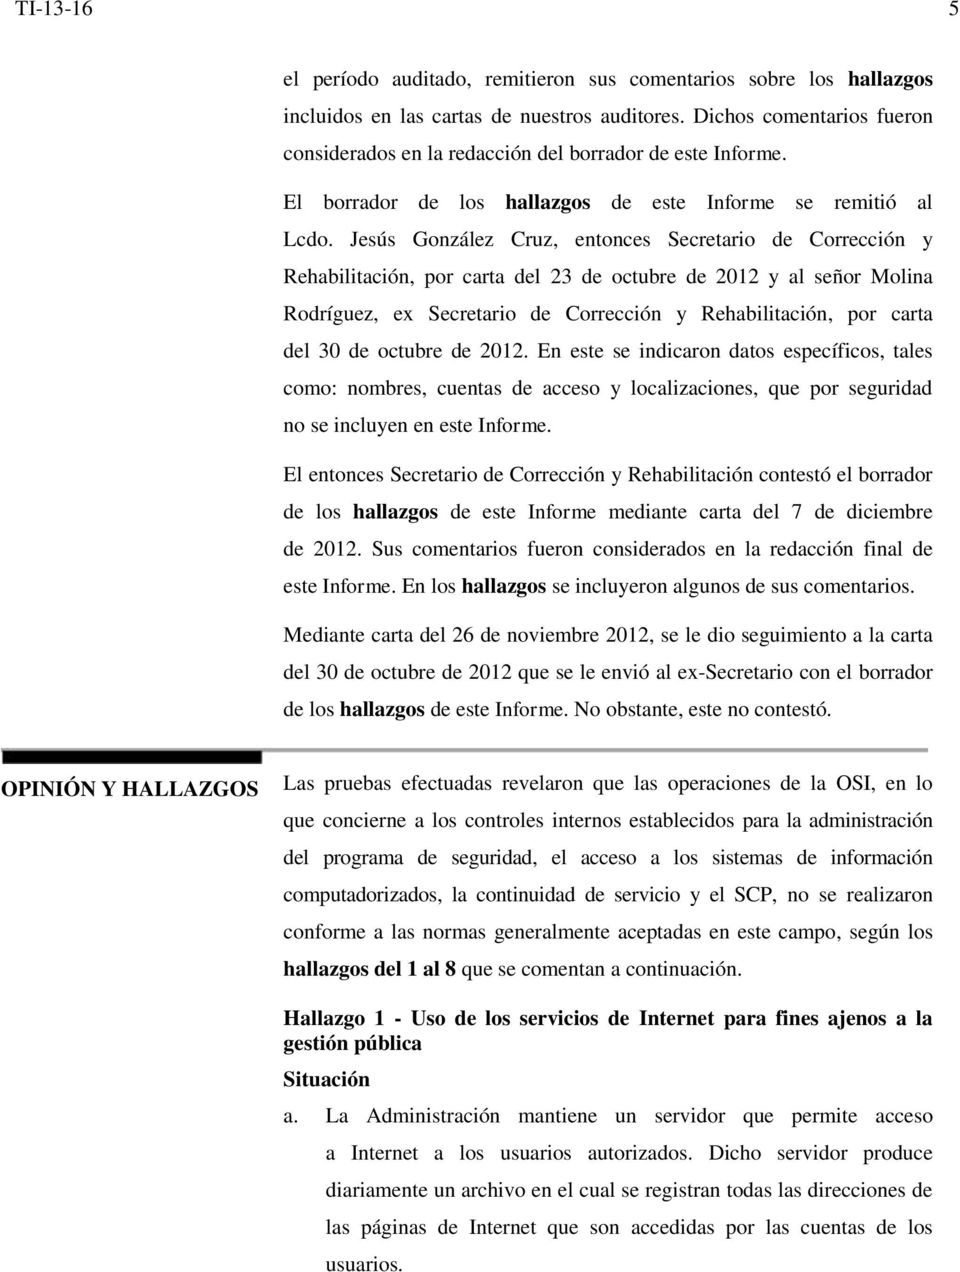 Jesús González Cruz, entonces Secretario de Corrección y Rehabilitación, por carta del 23 de octubre de 2012 y al señor Molina Rodríguez, ex Secretario de Corrección y Rehabilitación, por carta del